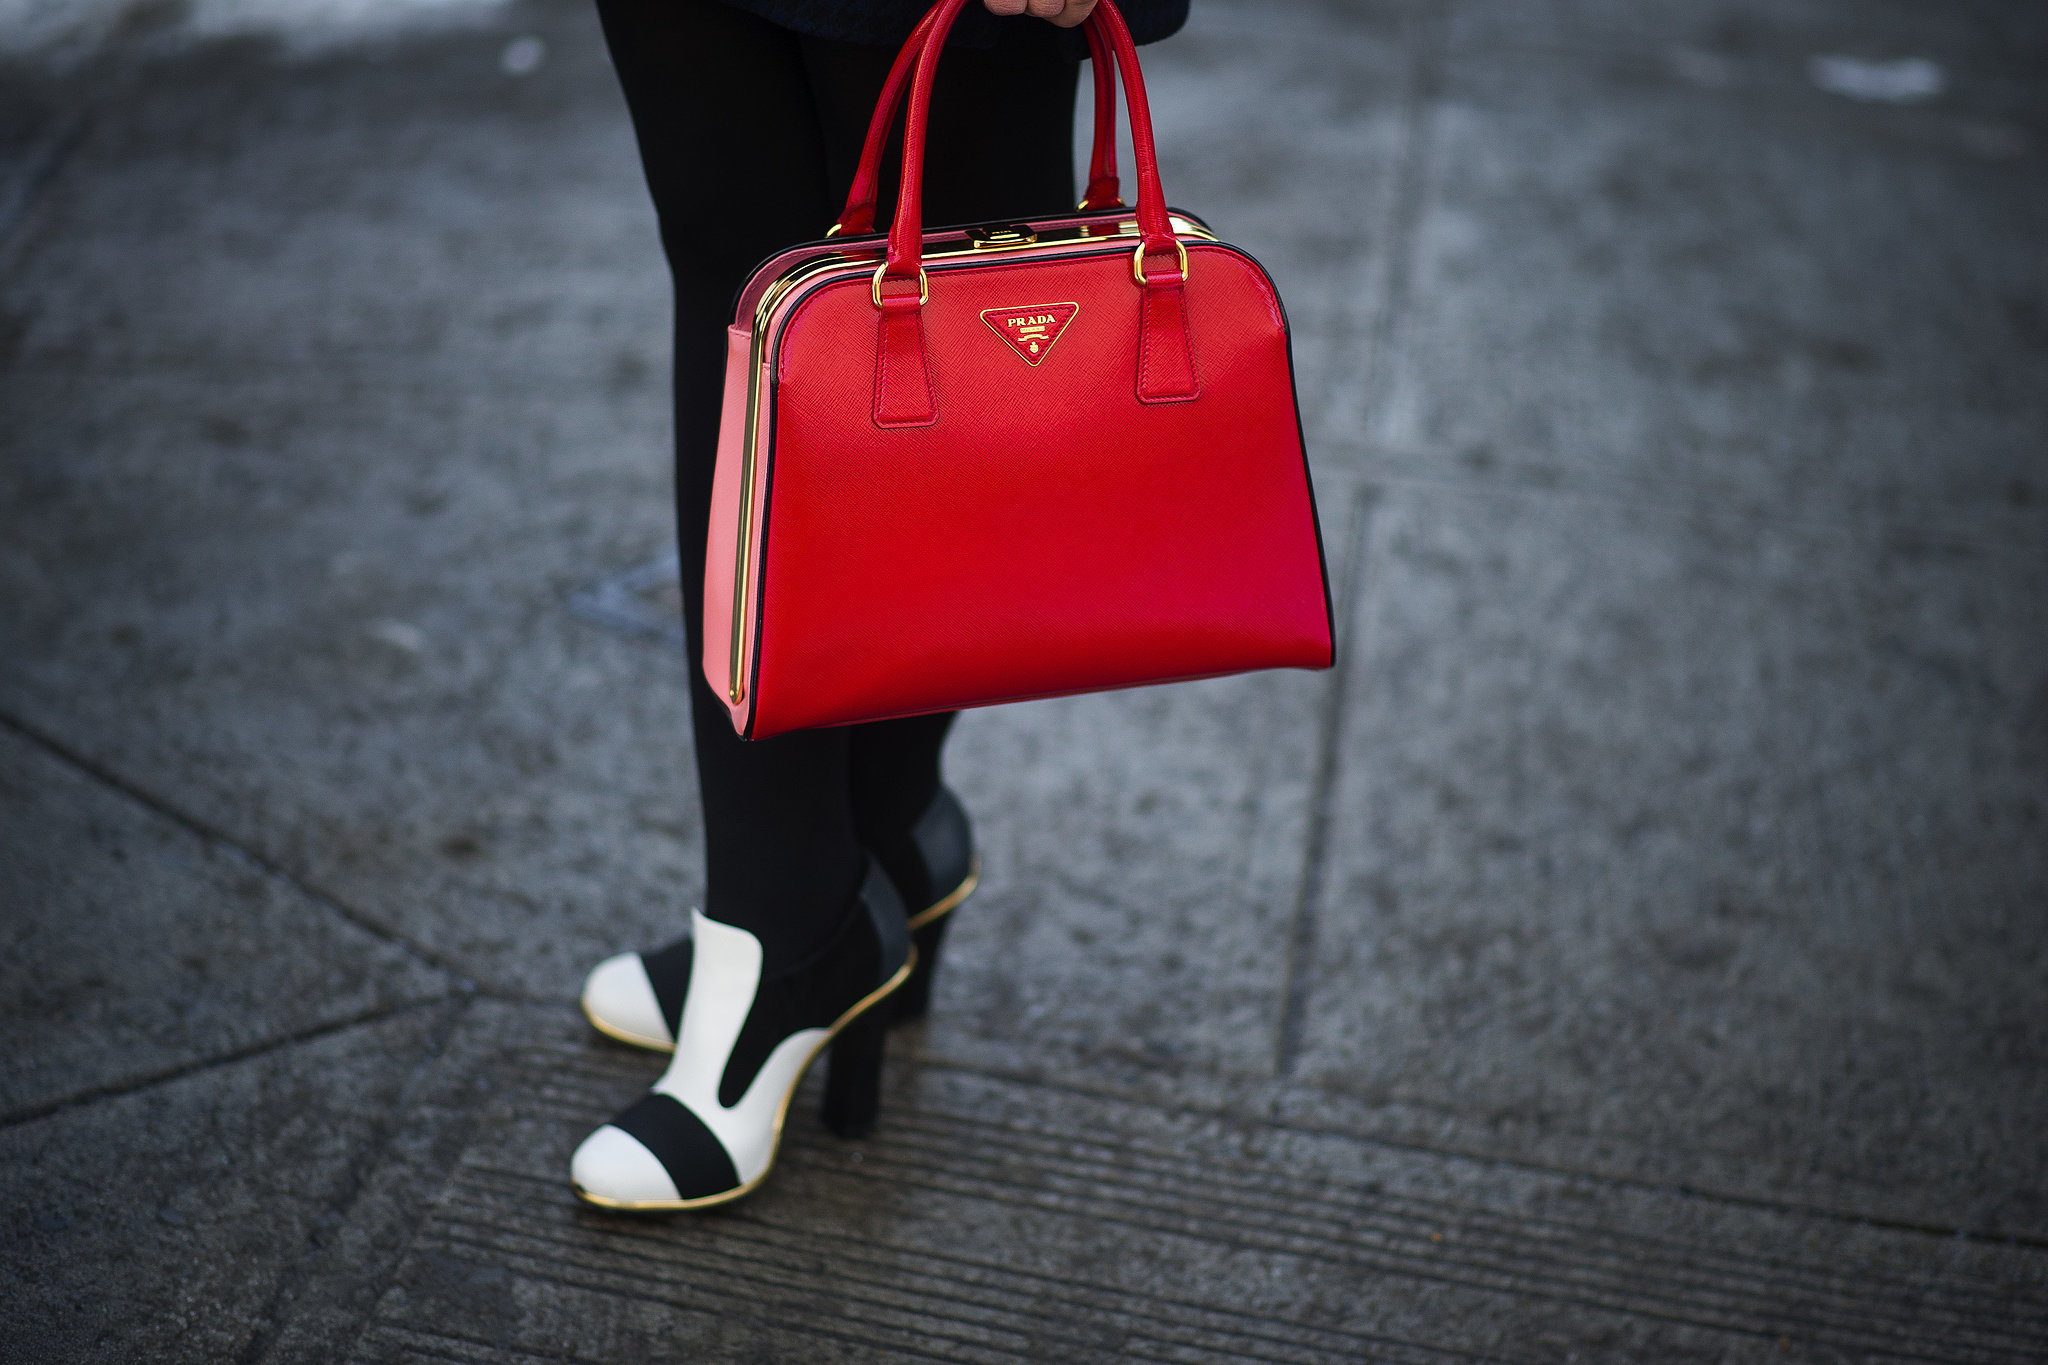 Red Prada met black and white heels. 
